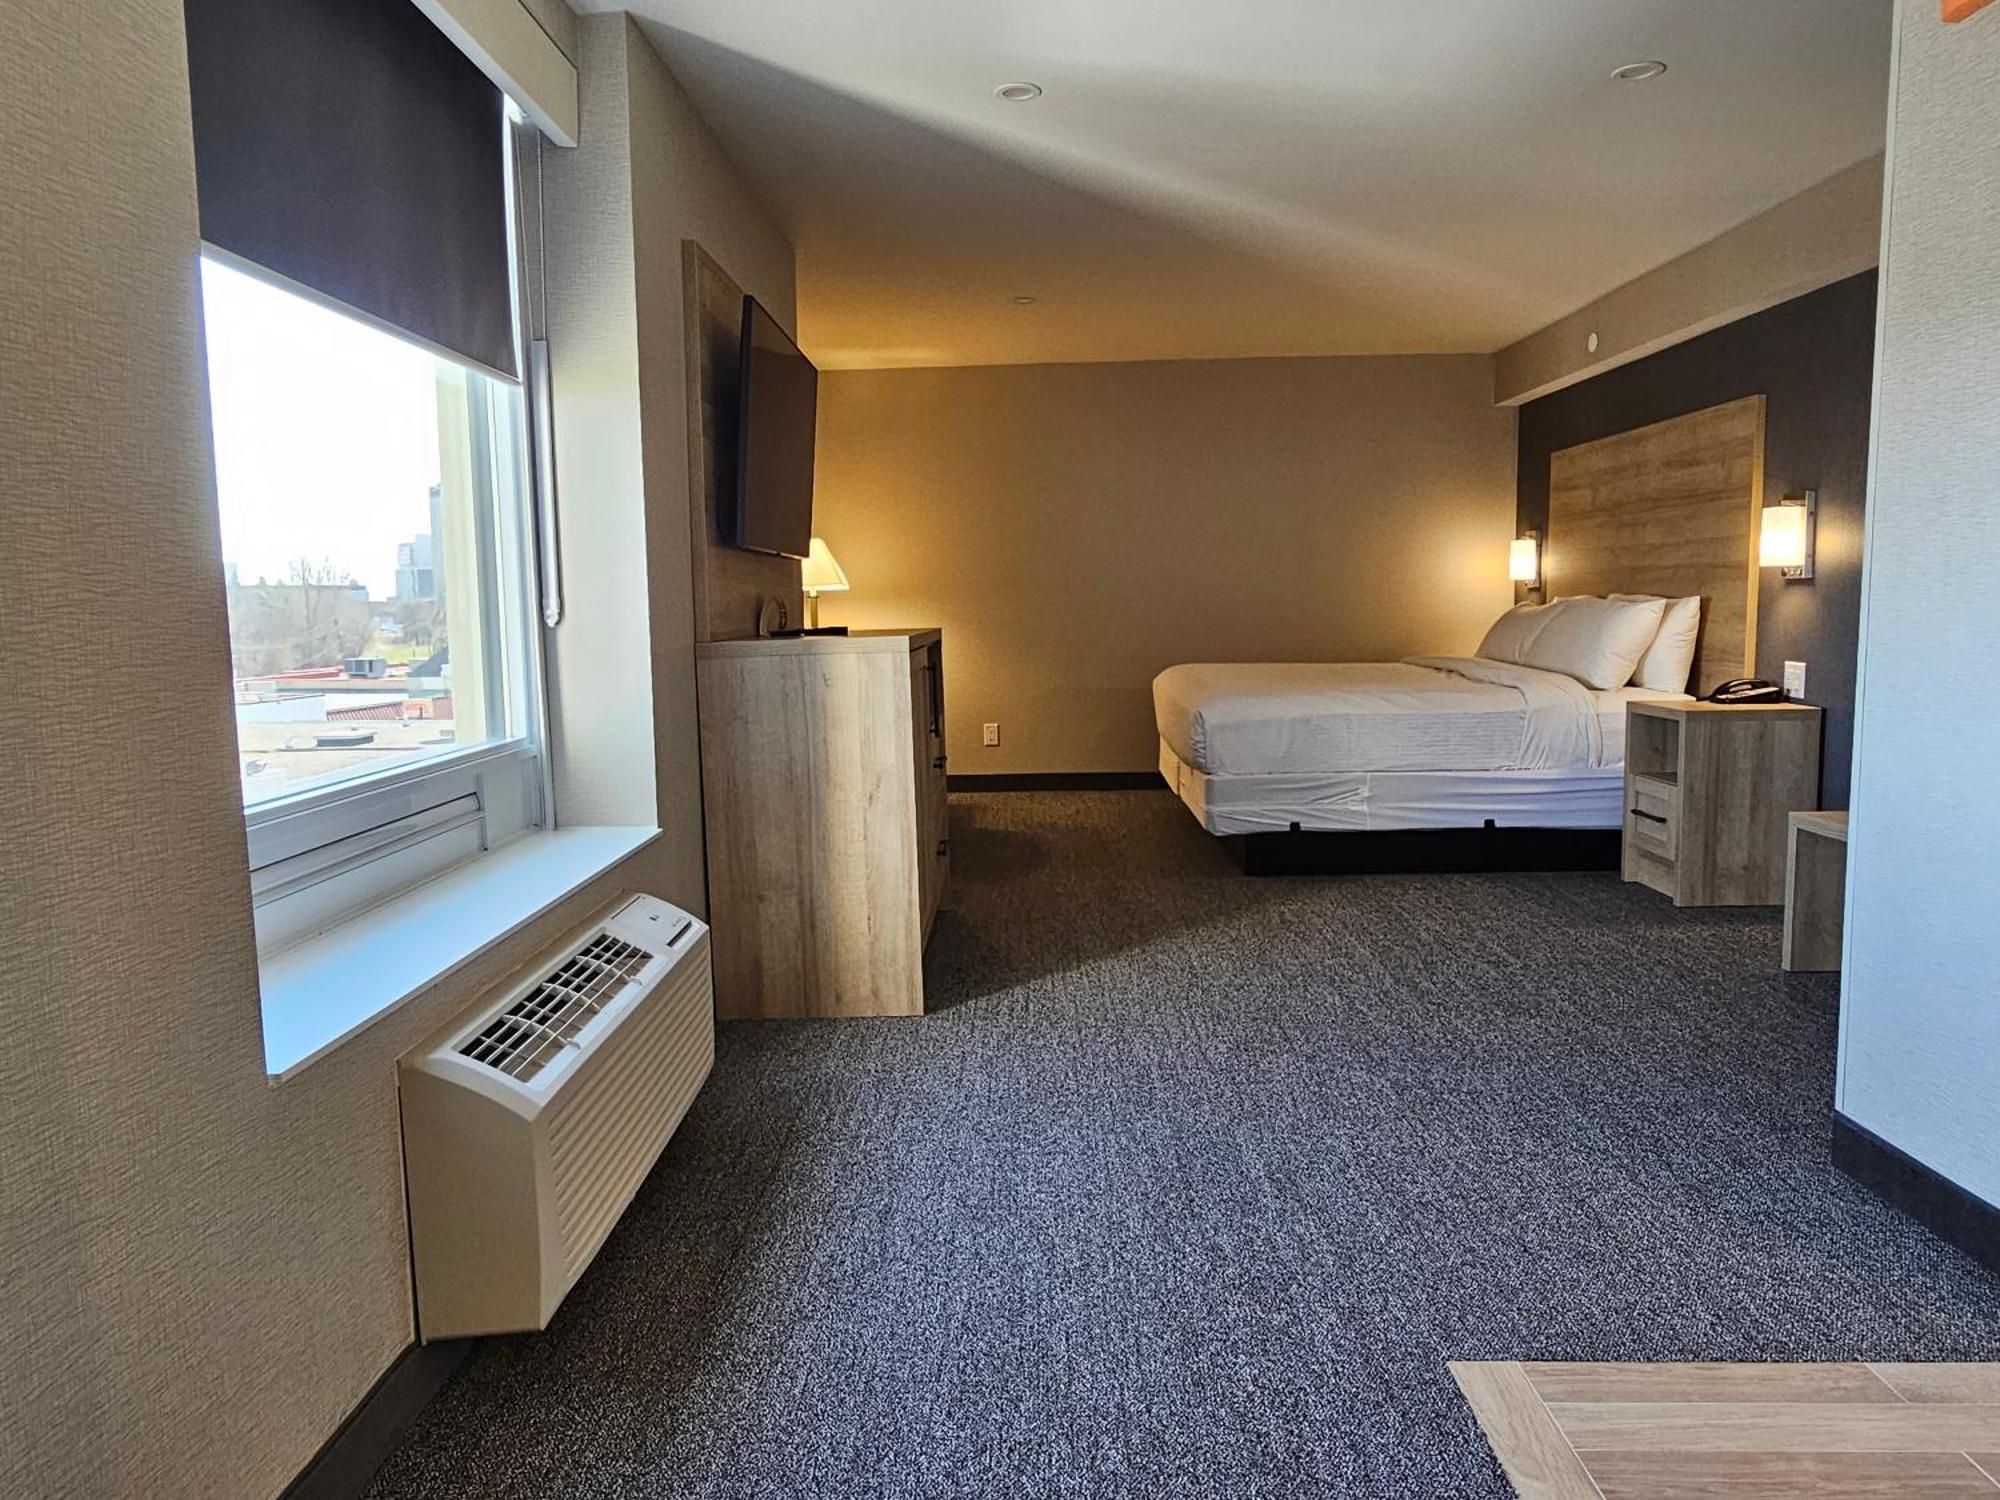 Vittoria Hotel & Suites Niagara Falls Zewnętrze zdjęcie